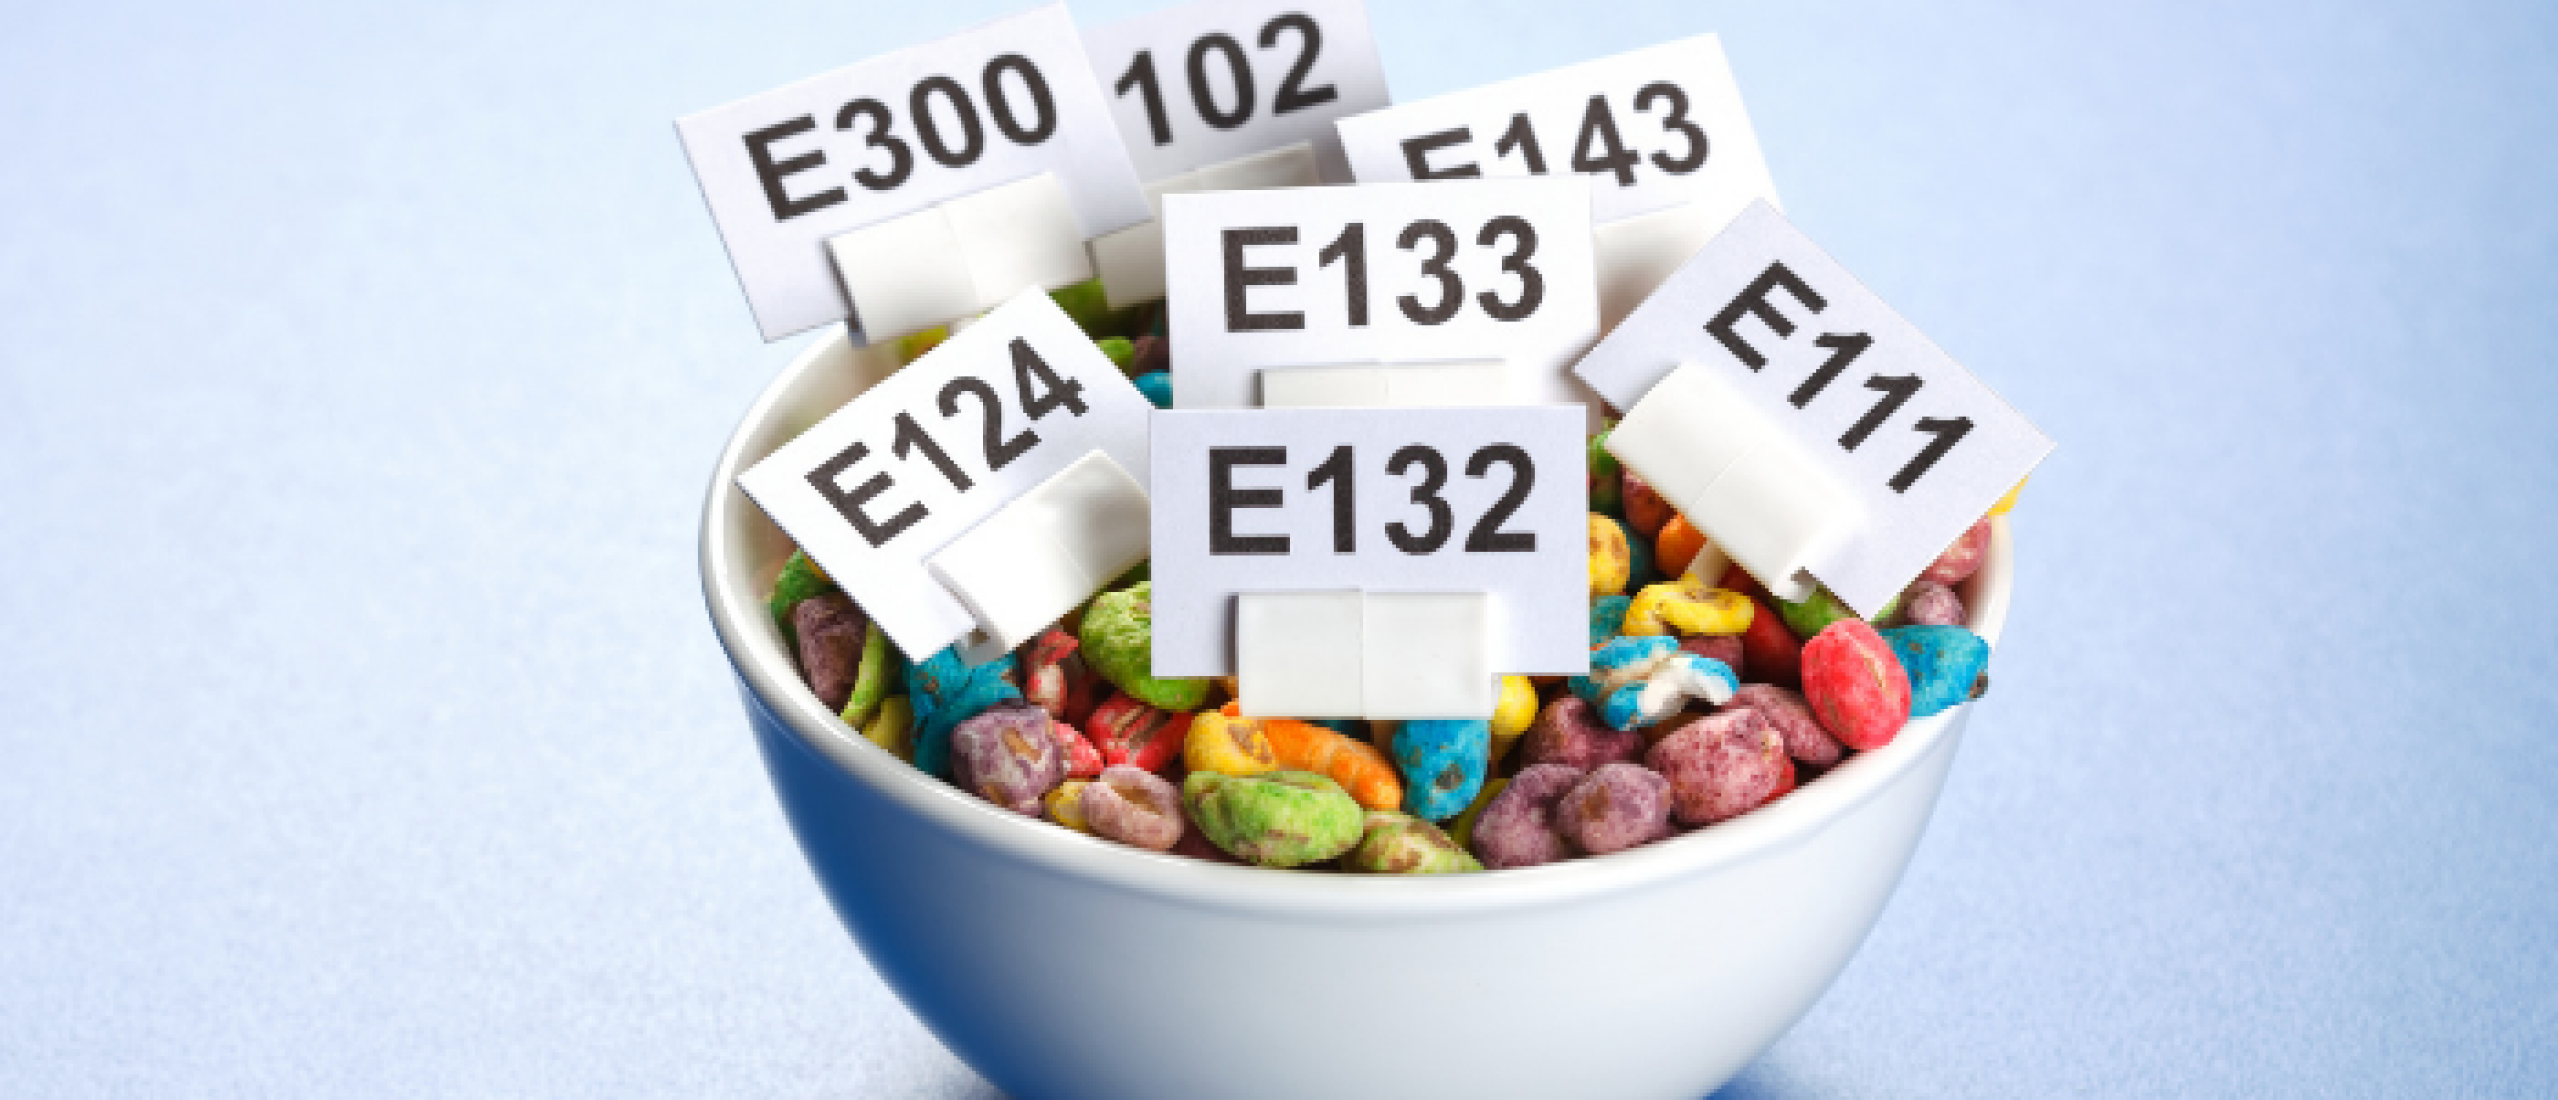 Additief E171 krijgt verbod in hele EU, witte kleurstof potentieel kankerverwekkend!